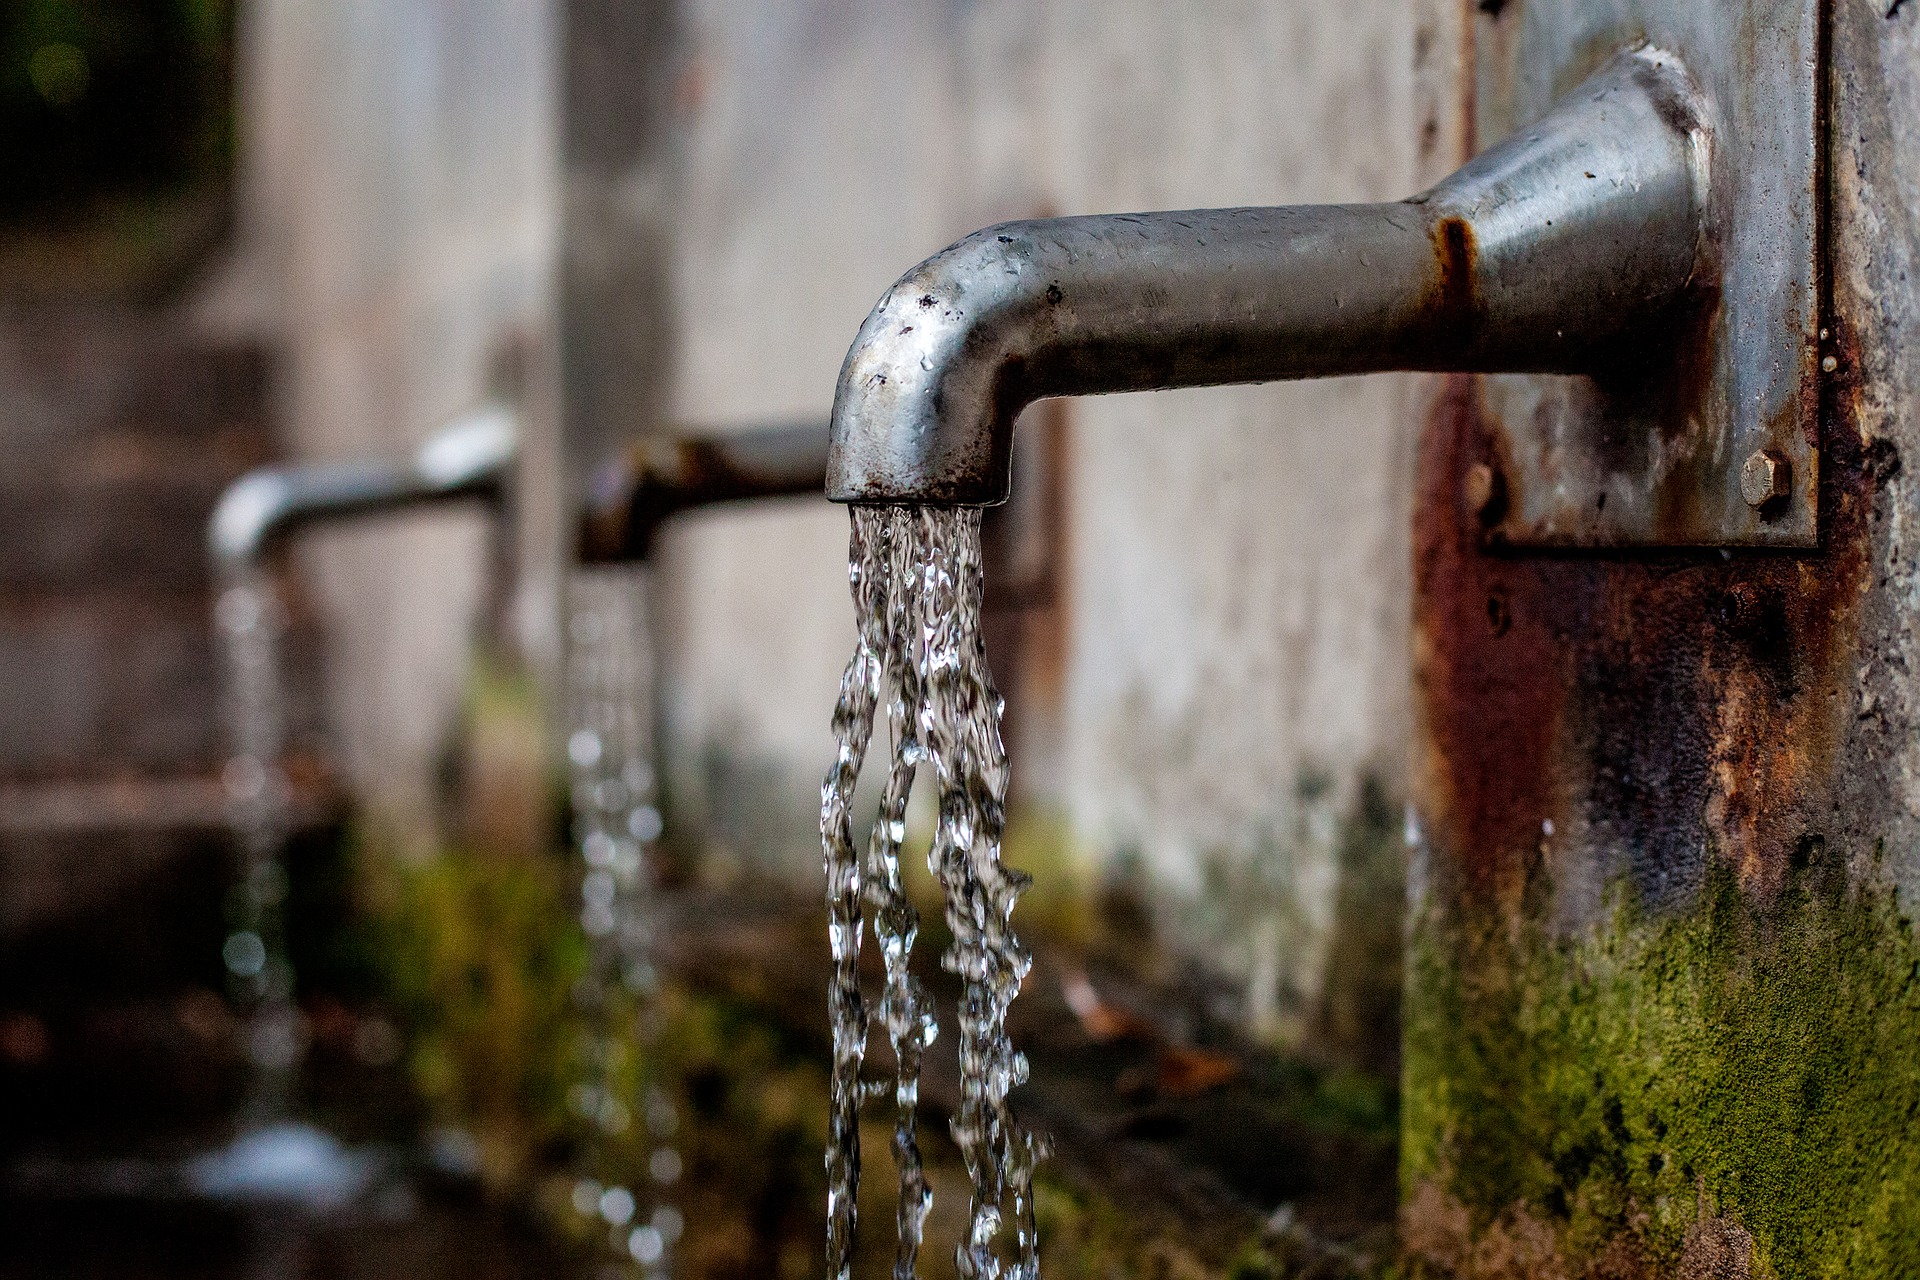 Foto zum Thema Trinkwasser von pixabay.com